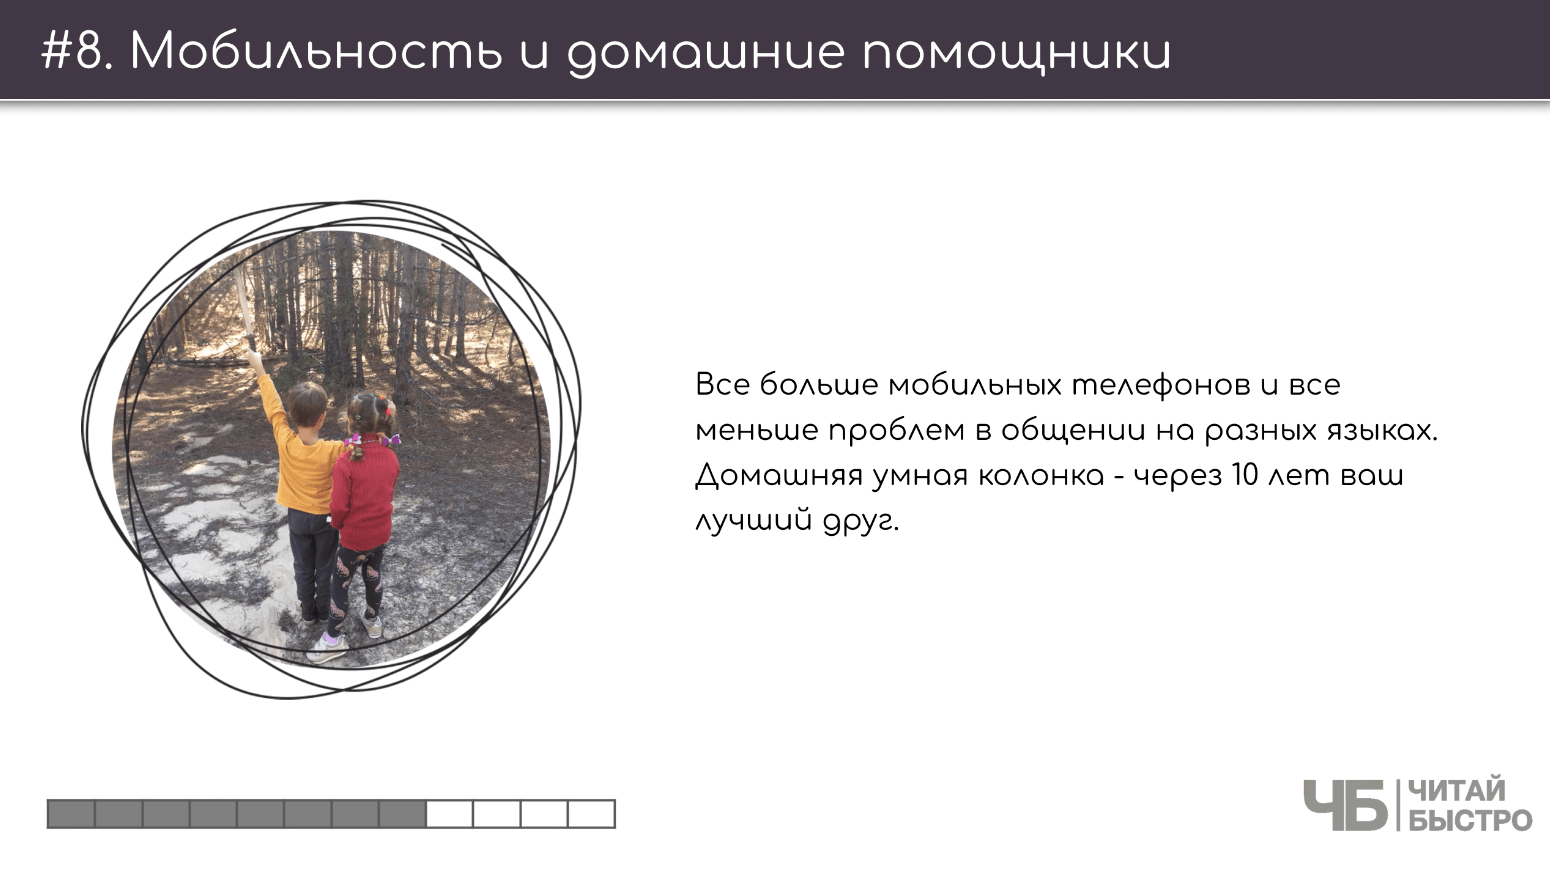 На этом слайде изображен тезис о мобильности и домашних помощниках и иллюстрация двух детей в лесу.